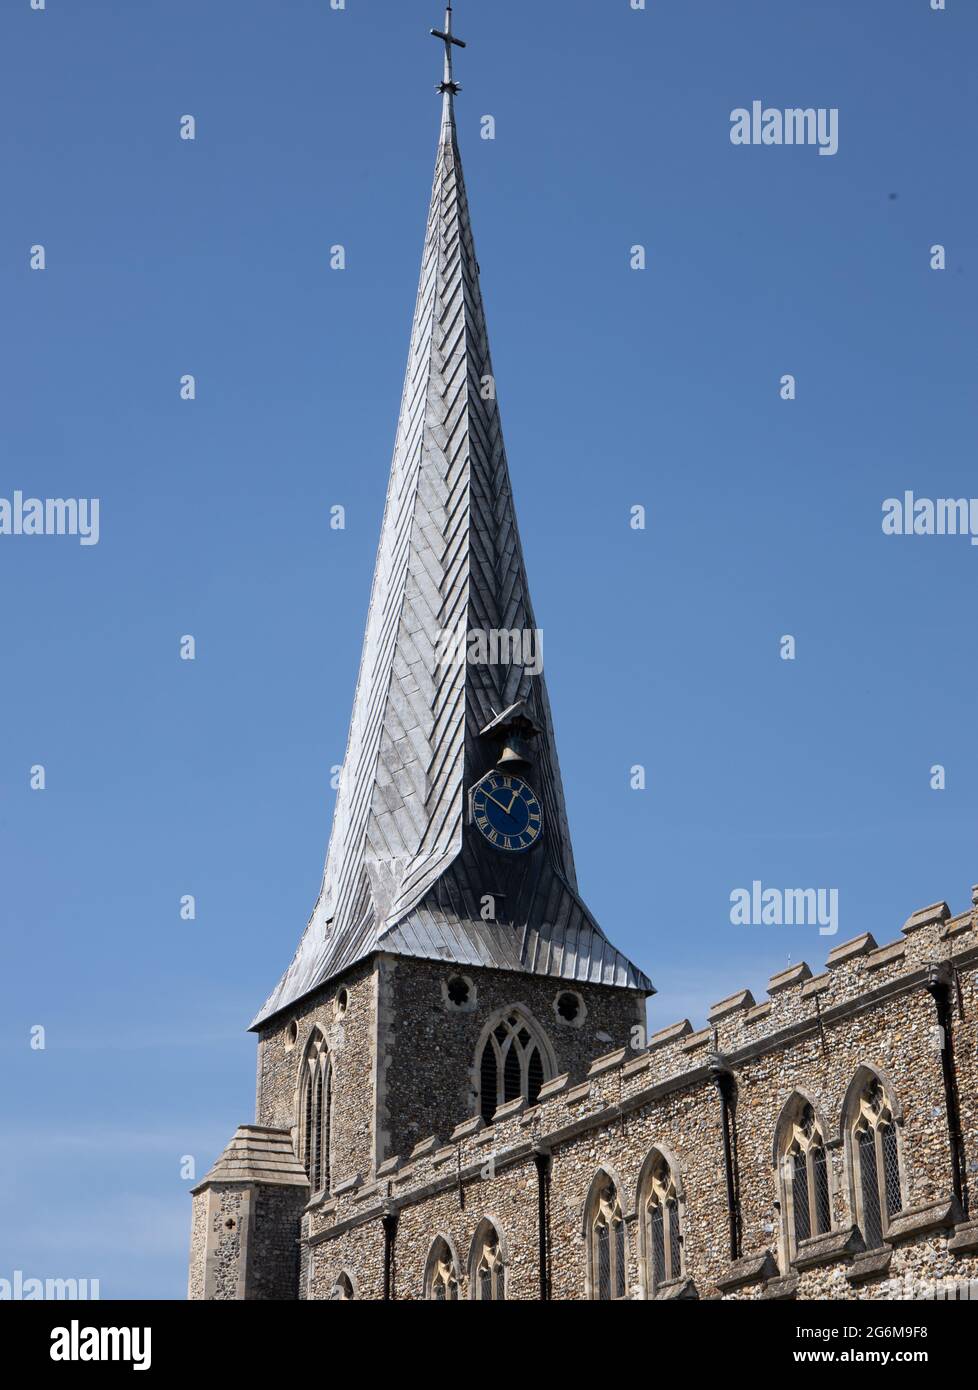 Der mittelalterliche Holz- und Bleiturm, die Uhr und die Glocke der St. Mary's Kirche in Hadleigh, Suffolk, England Stockfoto